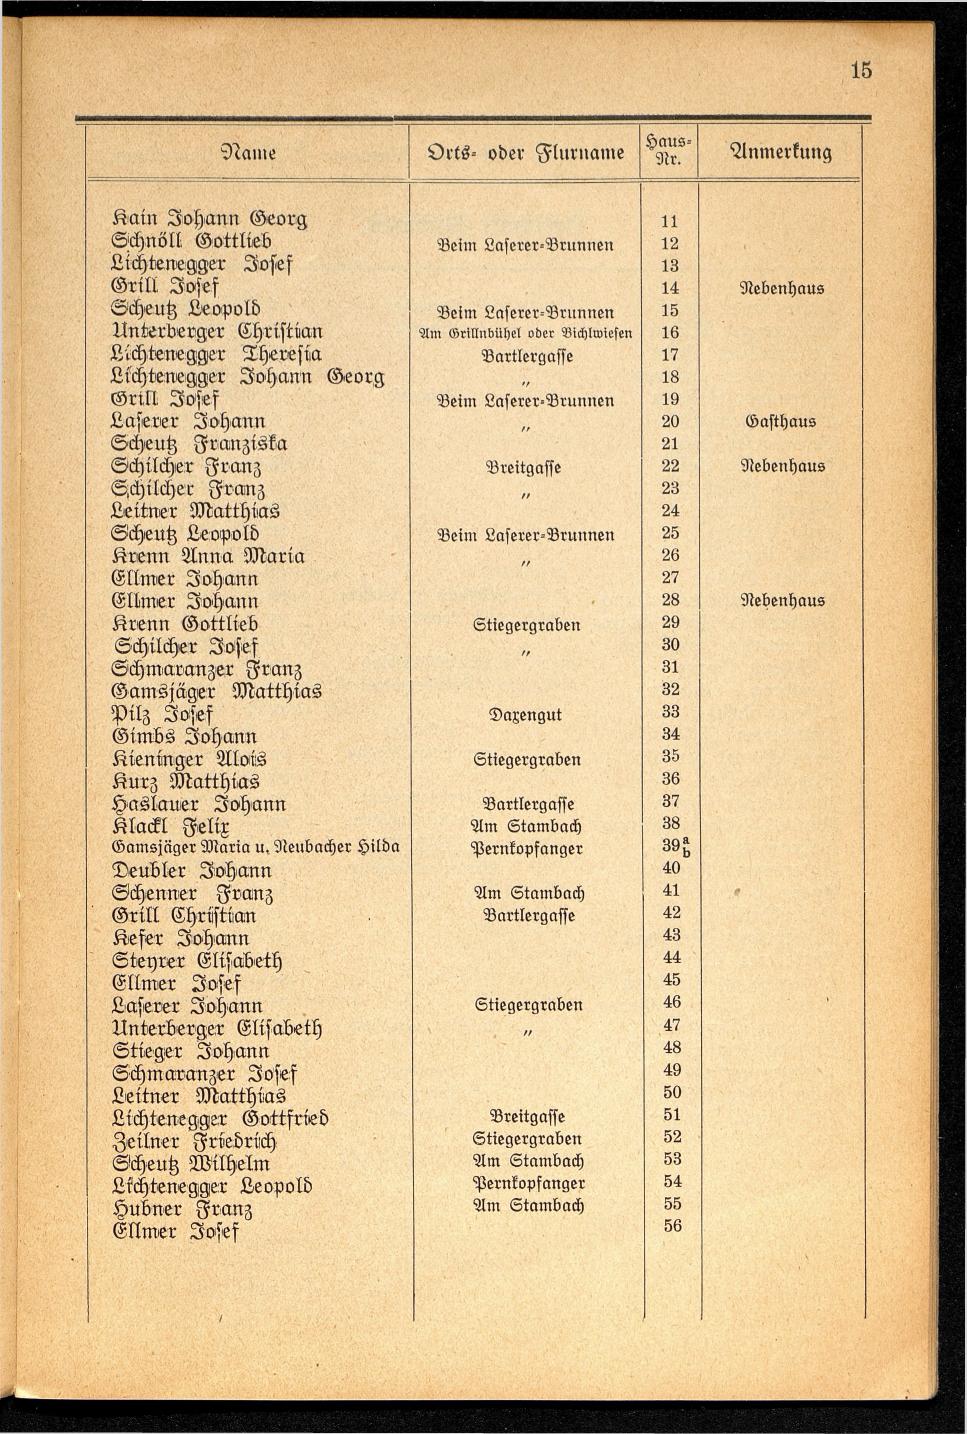 Häuser-Verzeichnis der Gemeinde Goisern nach dem Stande von November 1937 - Seite 17